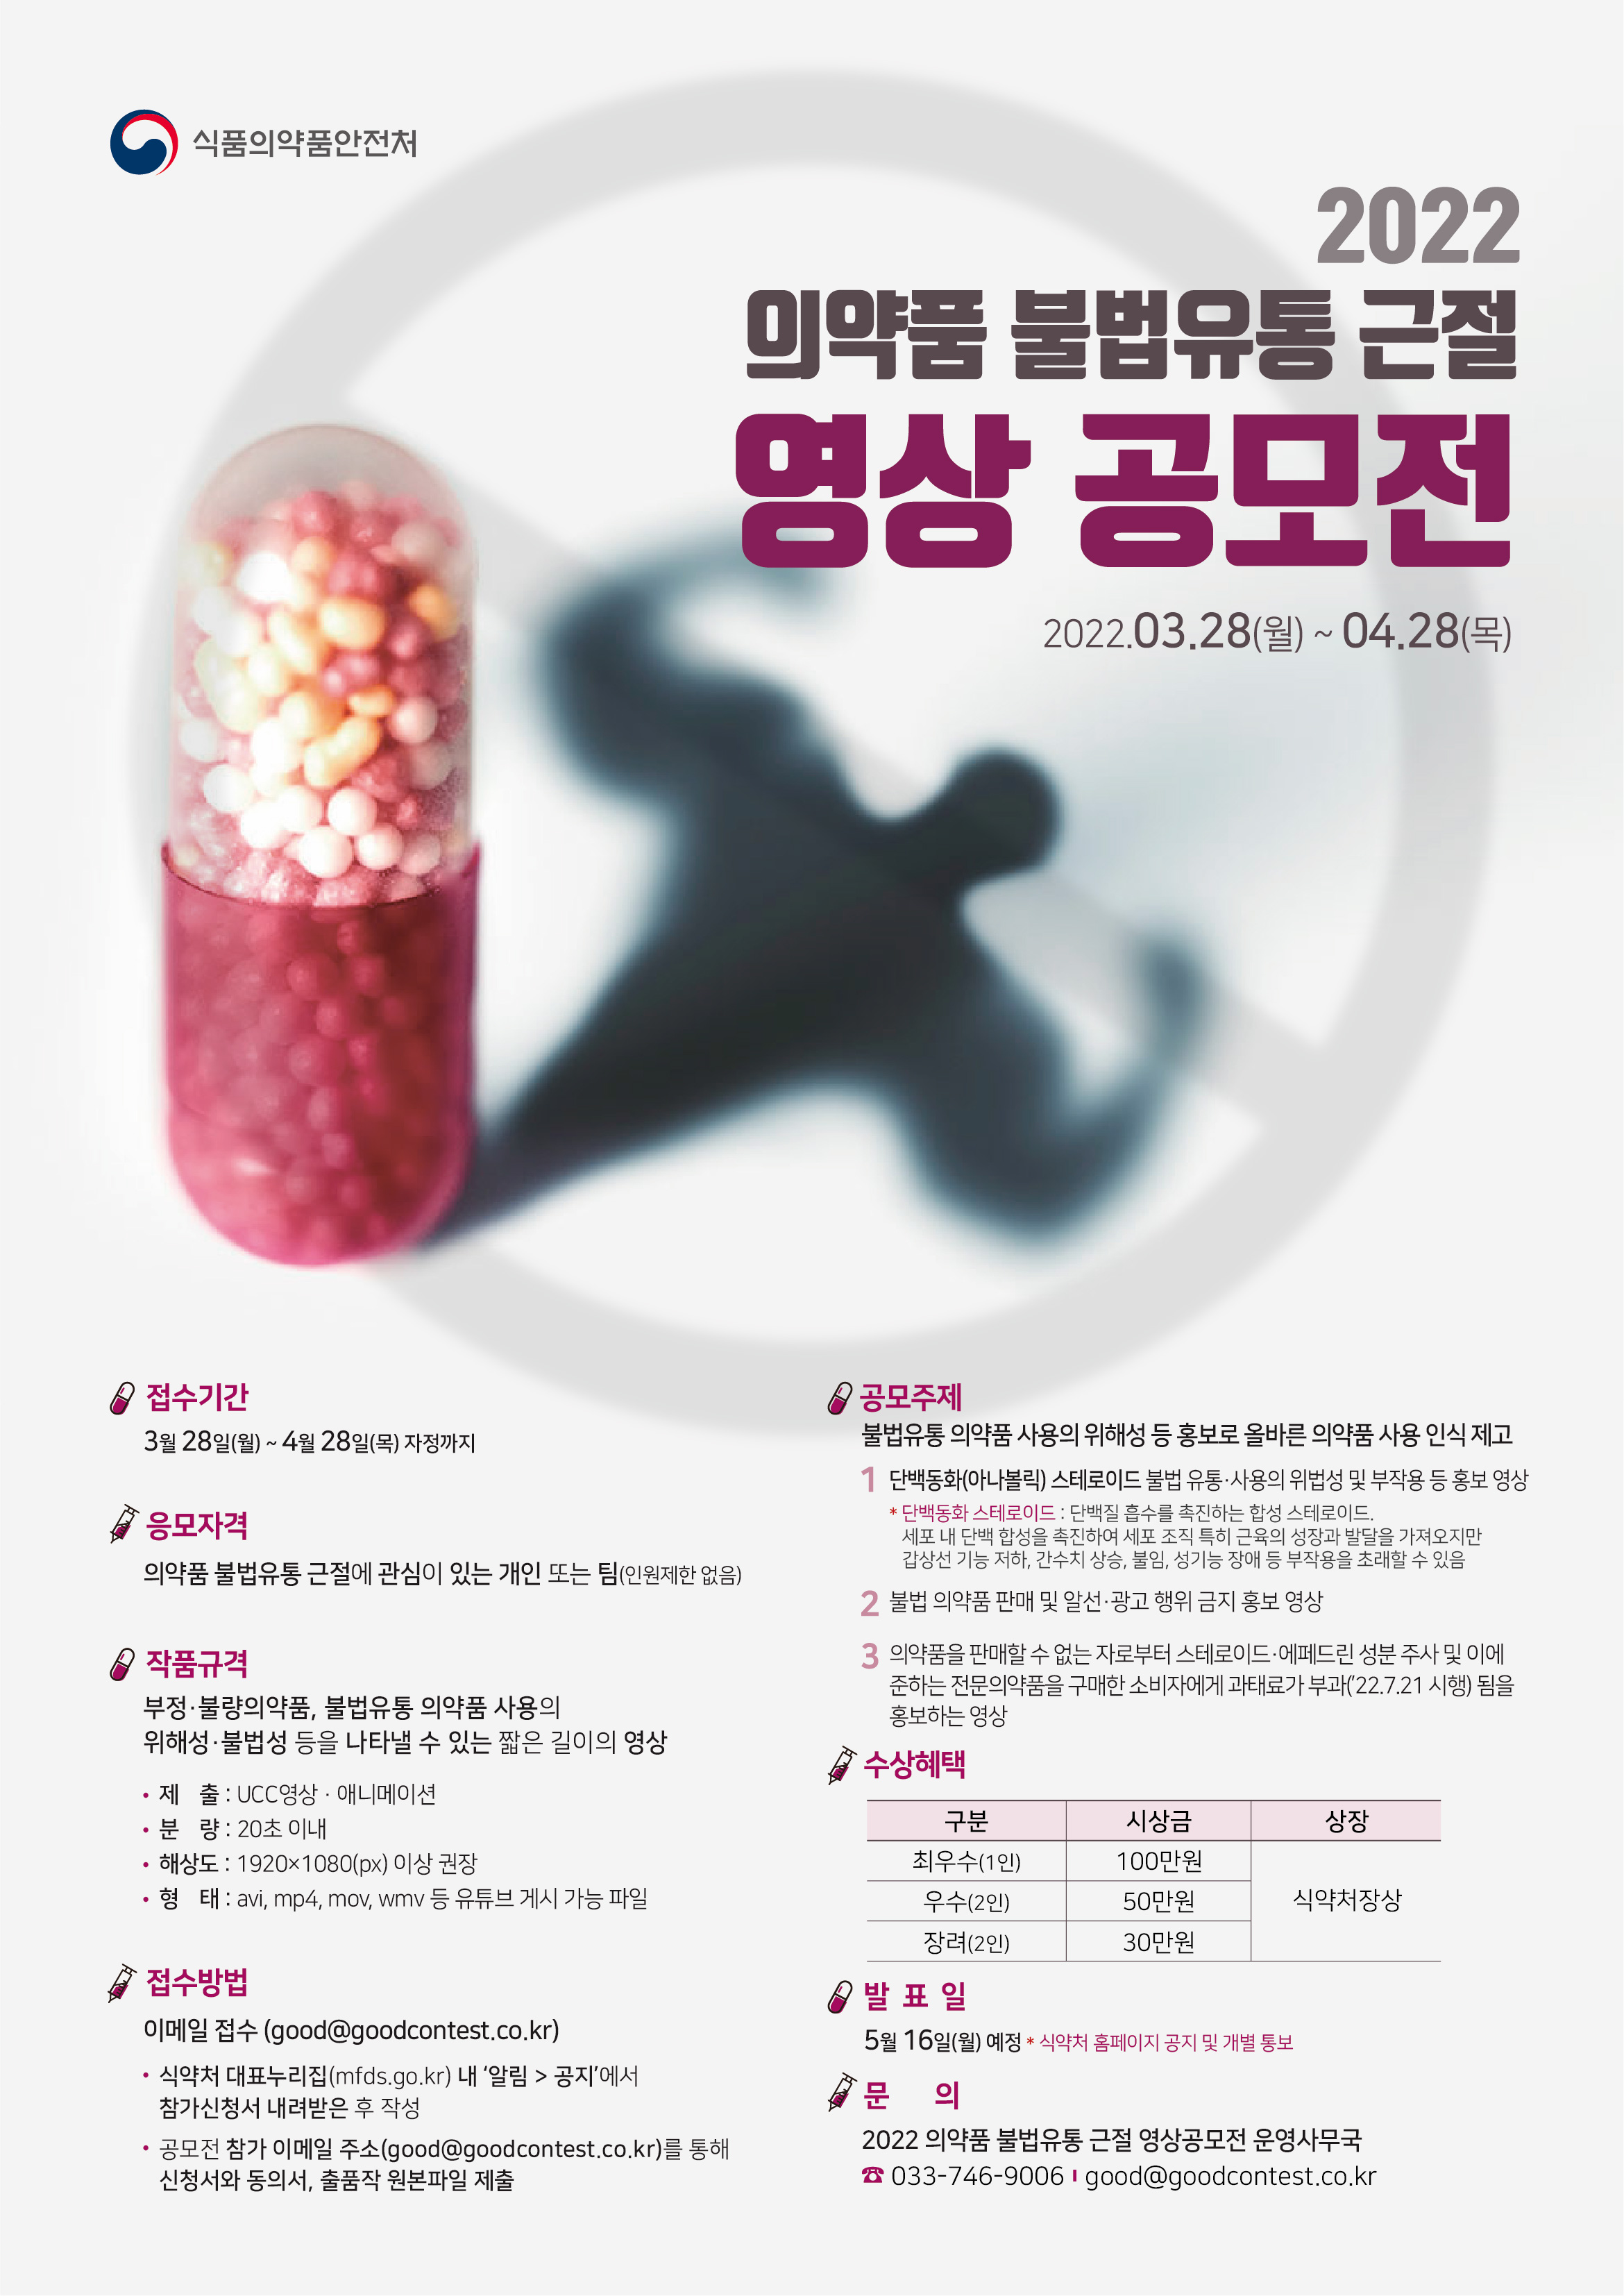 2022 의약품 불법유통 근절 영상 공모전_식품의약품안전처_포스터_최종_220324.jpg